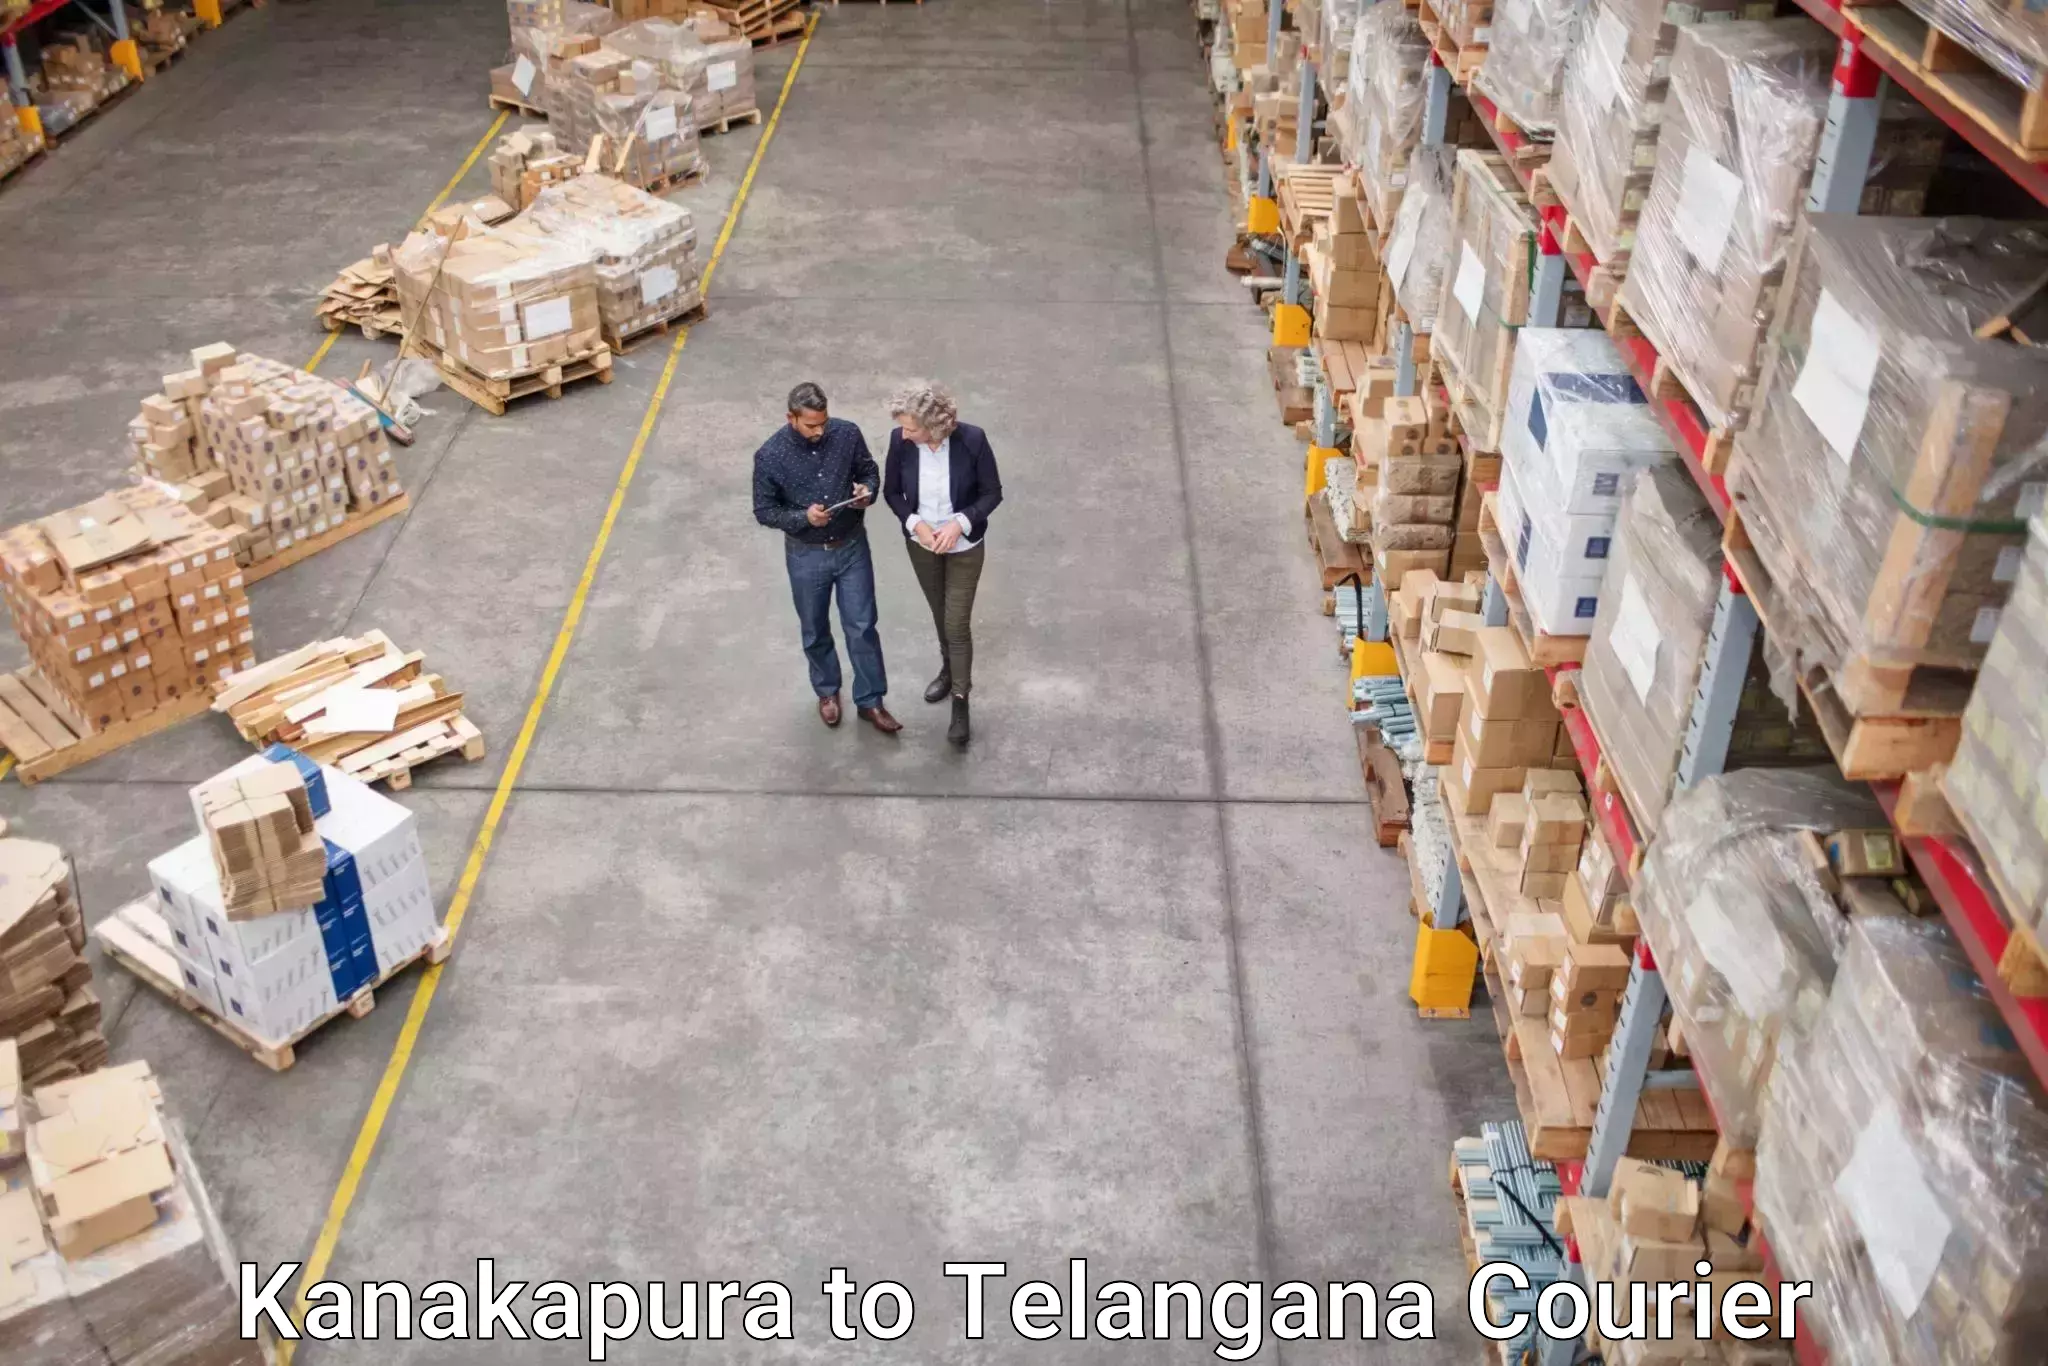 Speedy delivery service Kanakapura to Aswaraopeta